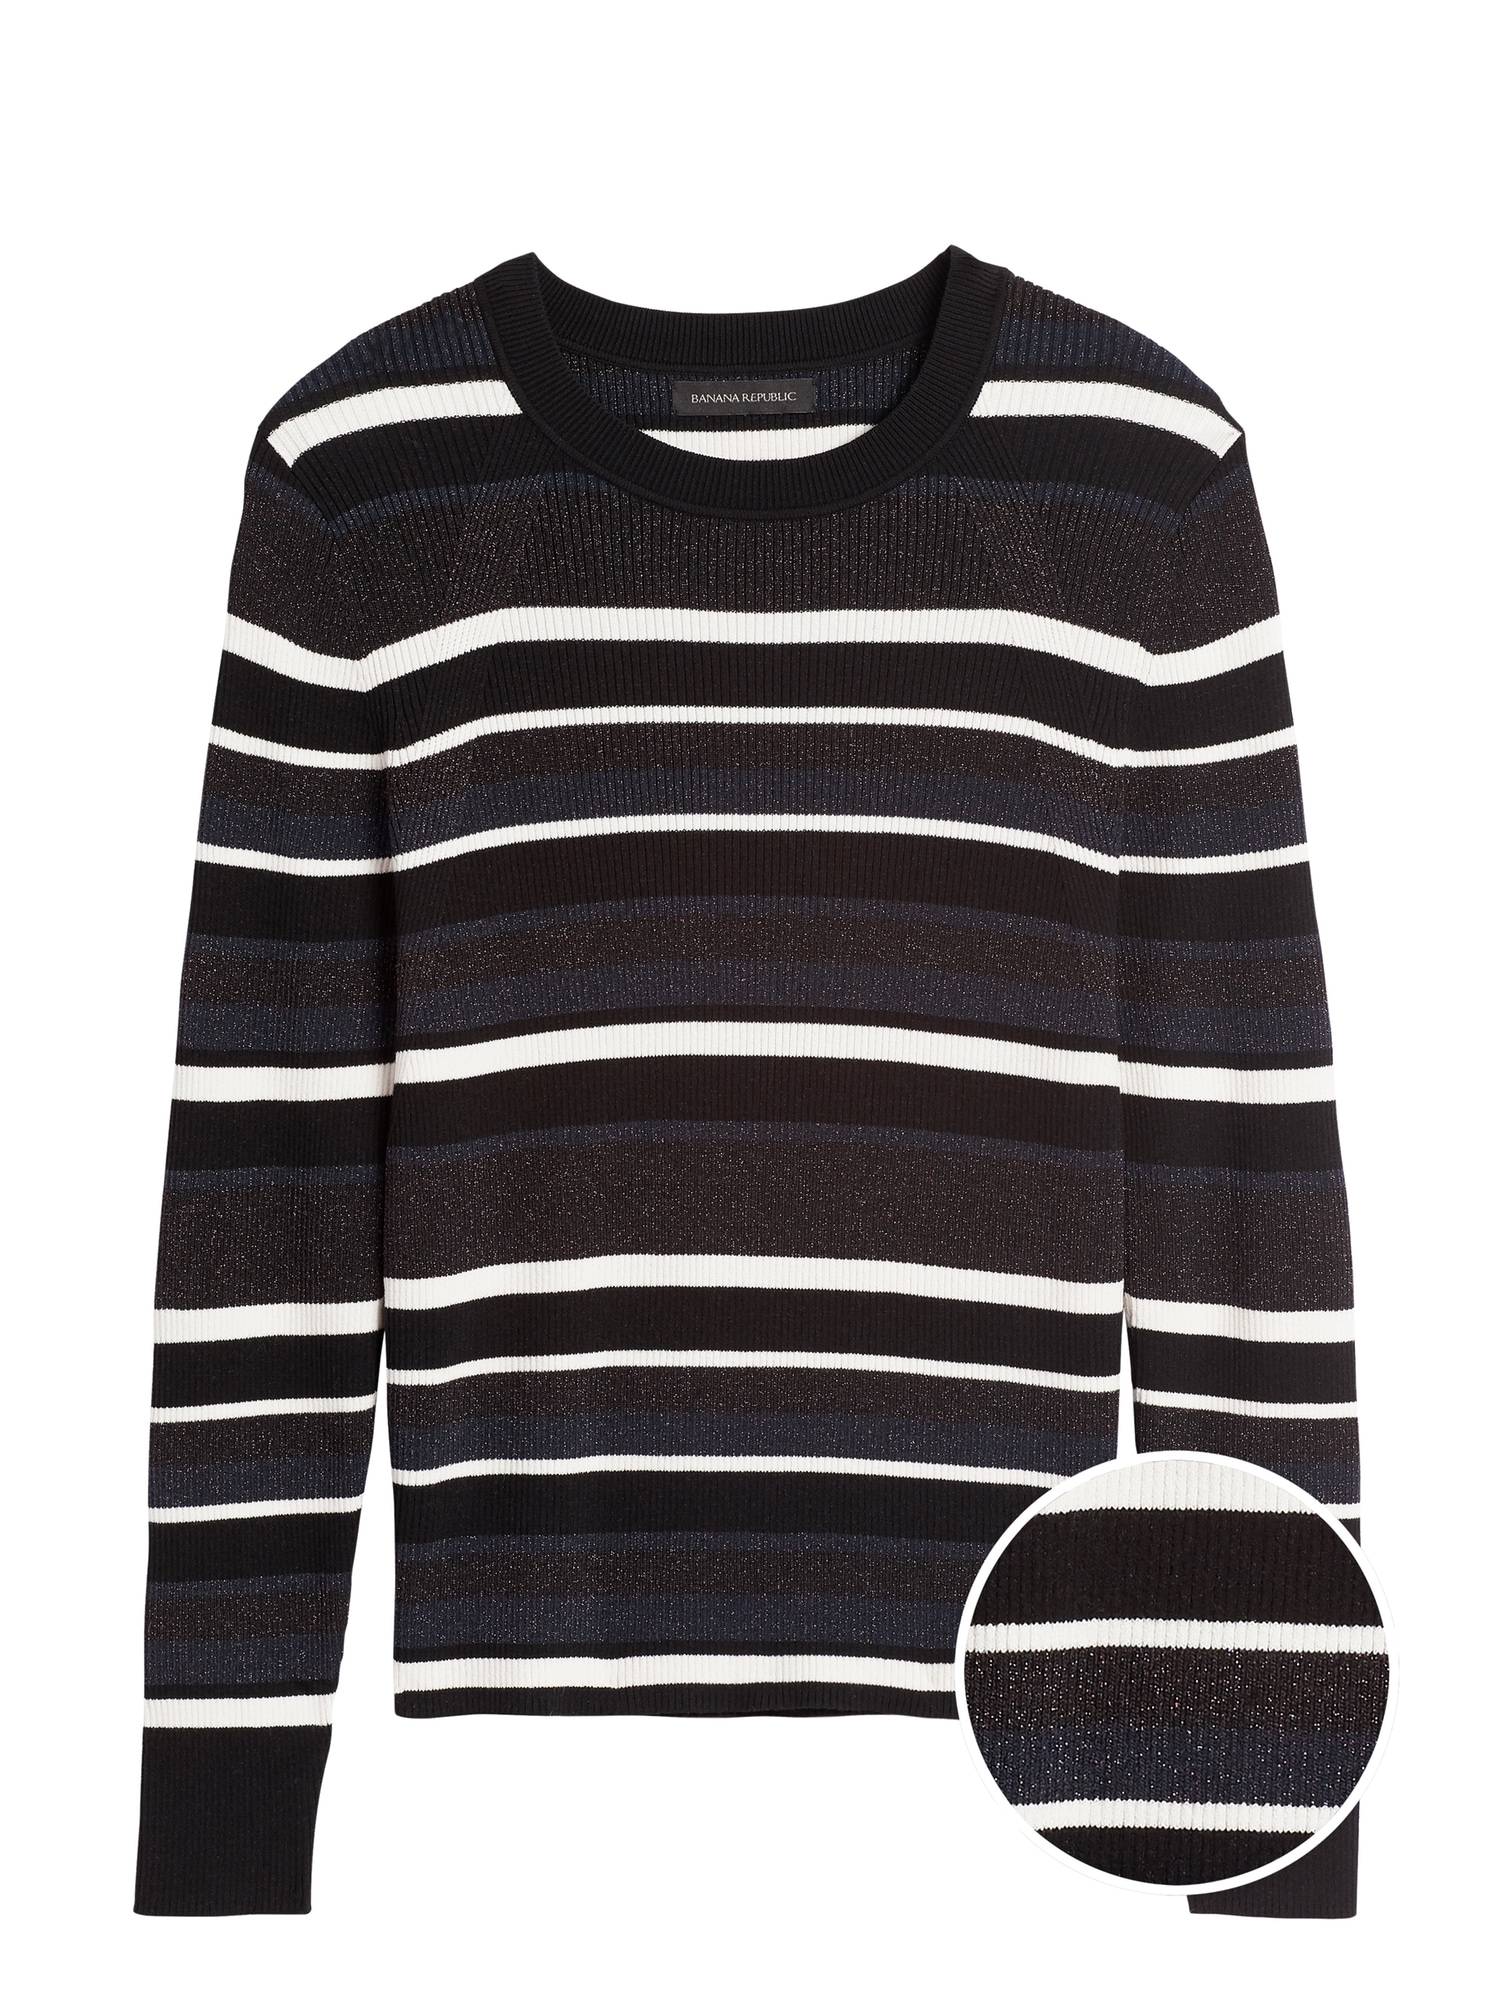 Metallic Stripe Sweater Top